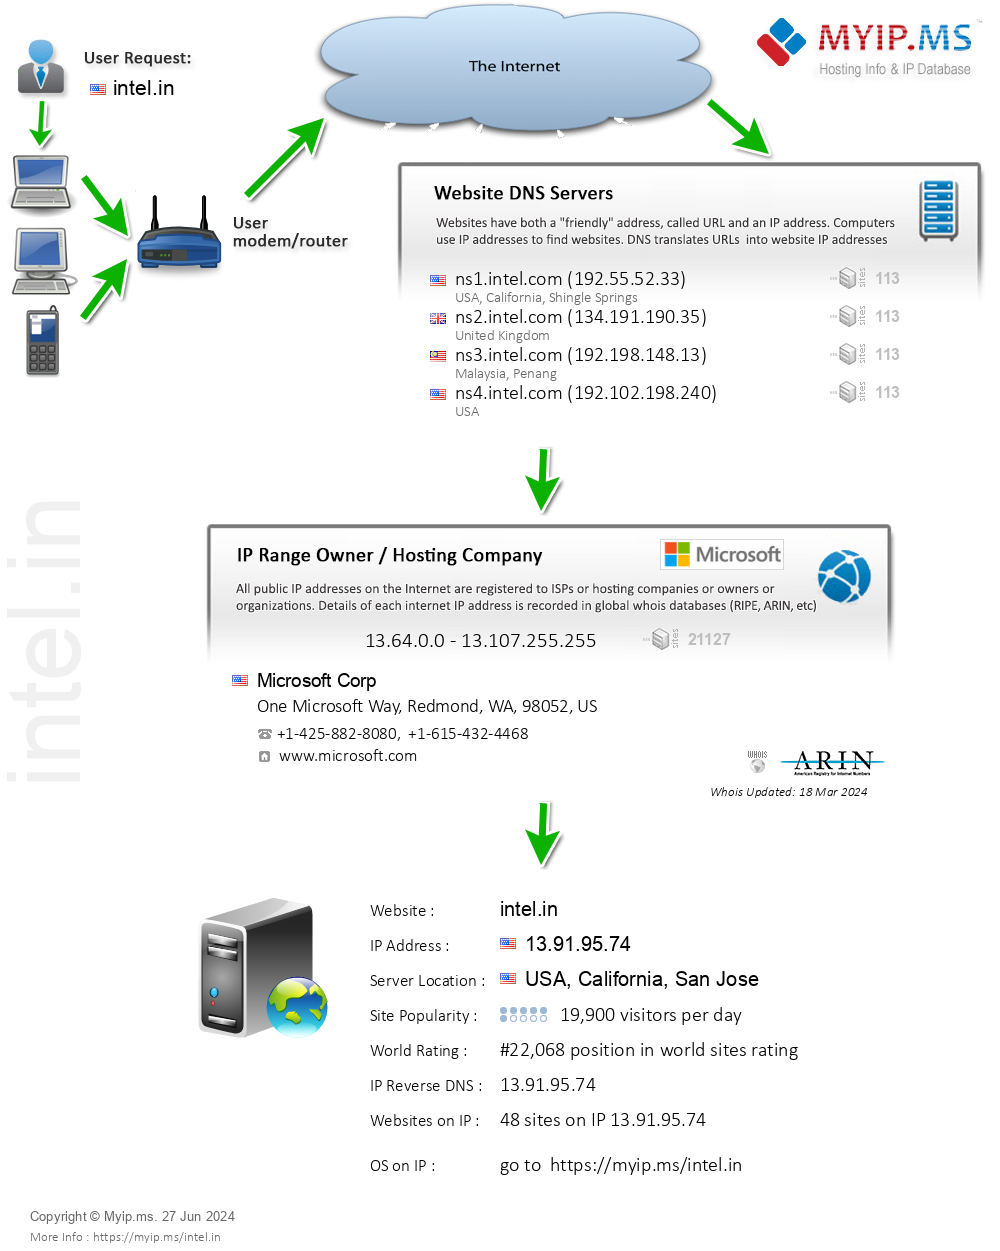 Intel.in - Website Hosting Visual IP Diagram